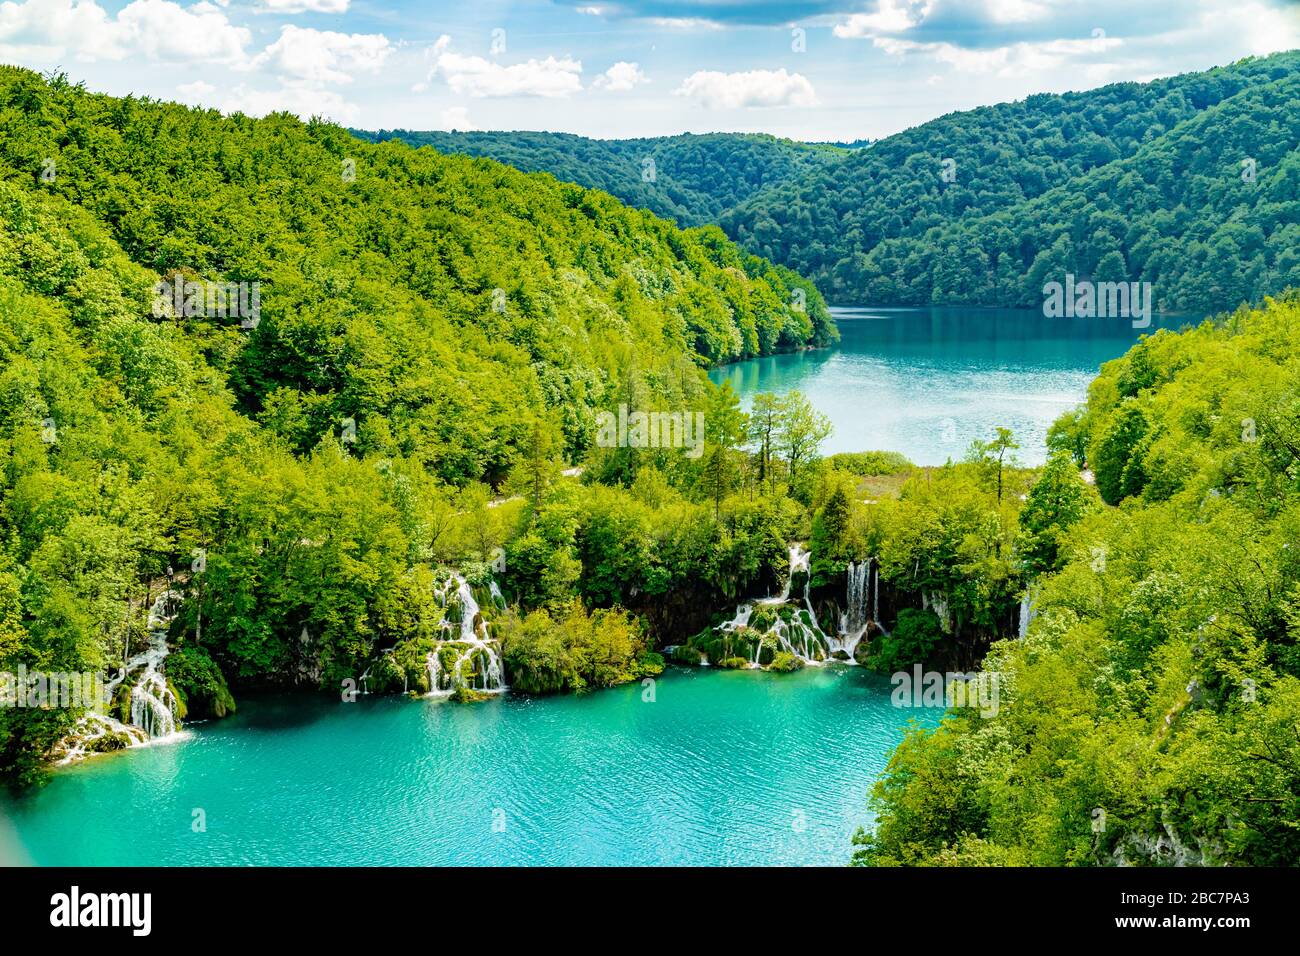 Cascate che scorrono tra laghi e circondate da colline boscose, Plitvice Lakes National Park, Croazia, Europa. Maggio 2017. Foto Stock